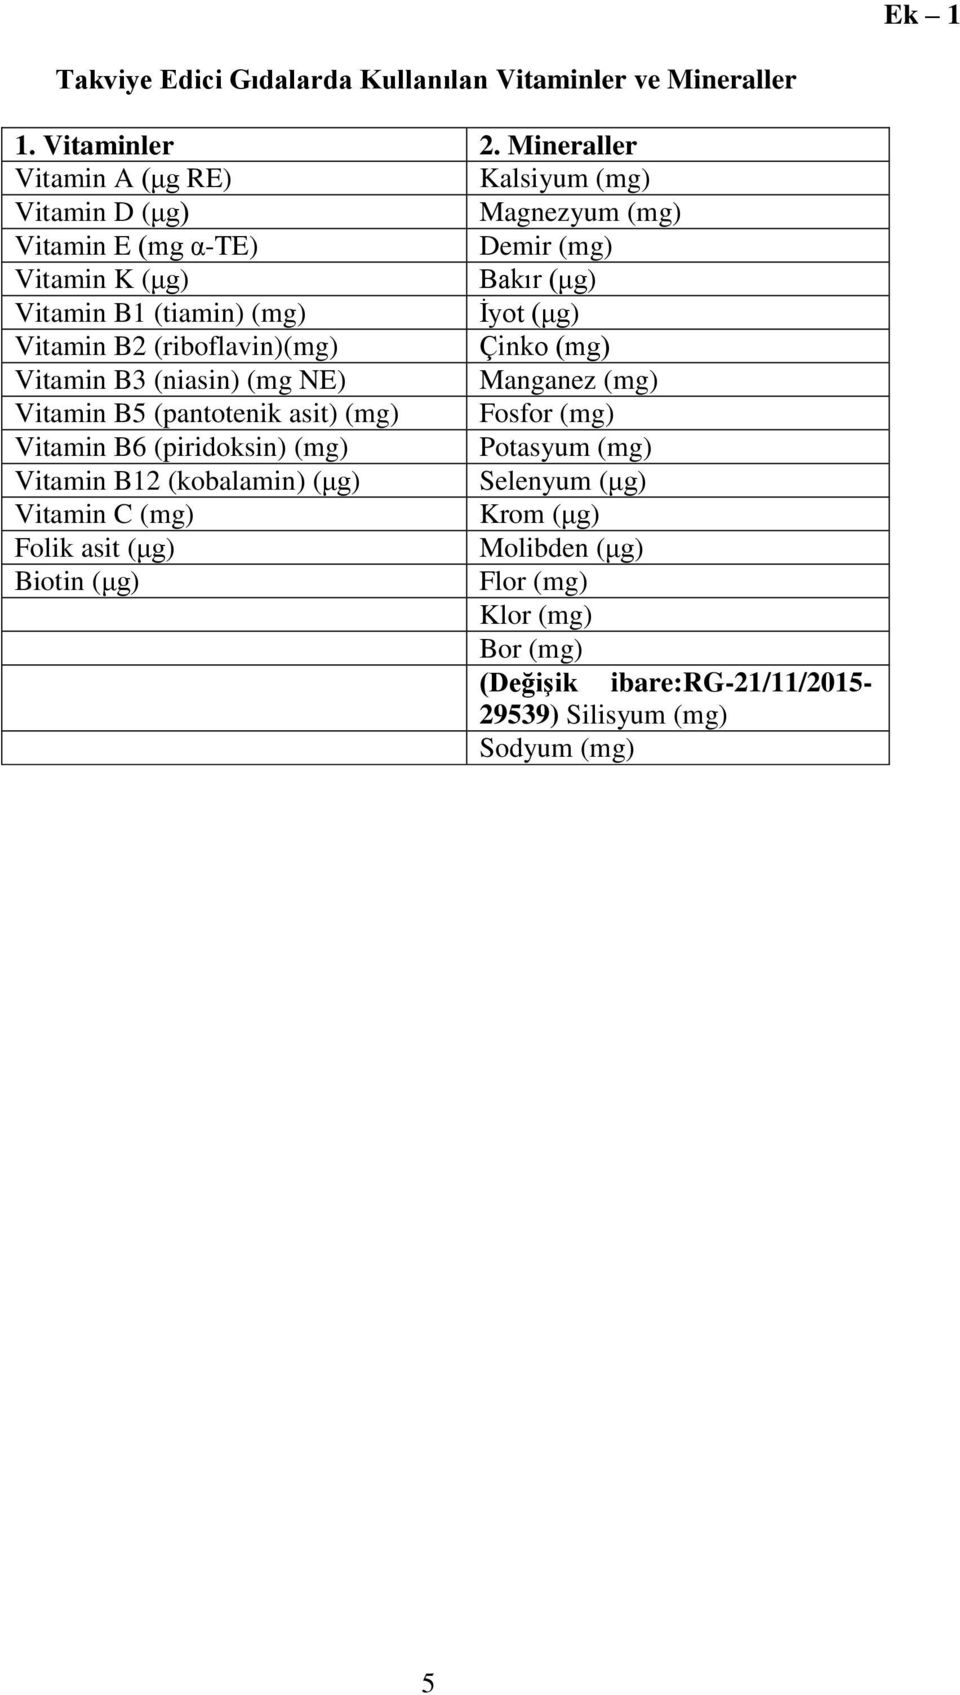 İyot (μg) Vitamin B2 (riboflavin)(mg) Çinko (mg) Vitamin B3 (niasin) (mg NE) Manganez (mg) Vitamin B5 (pantotenik asit) (mg) Fosfor (mg) Vitamin B6